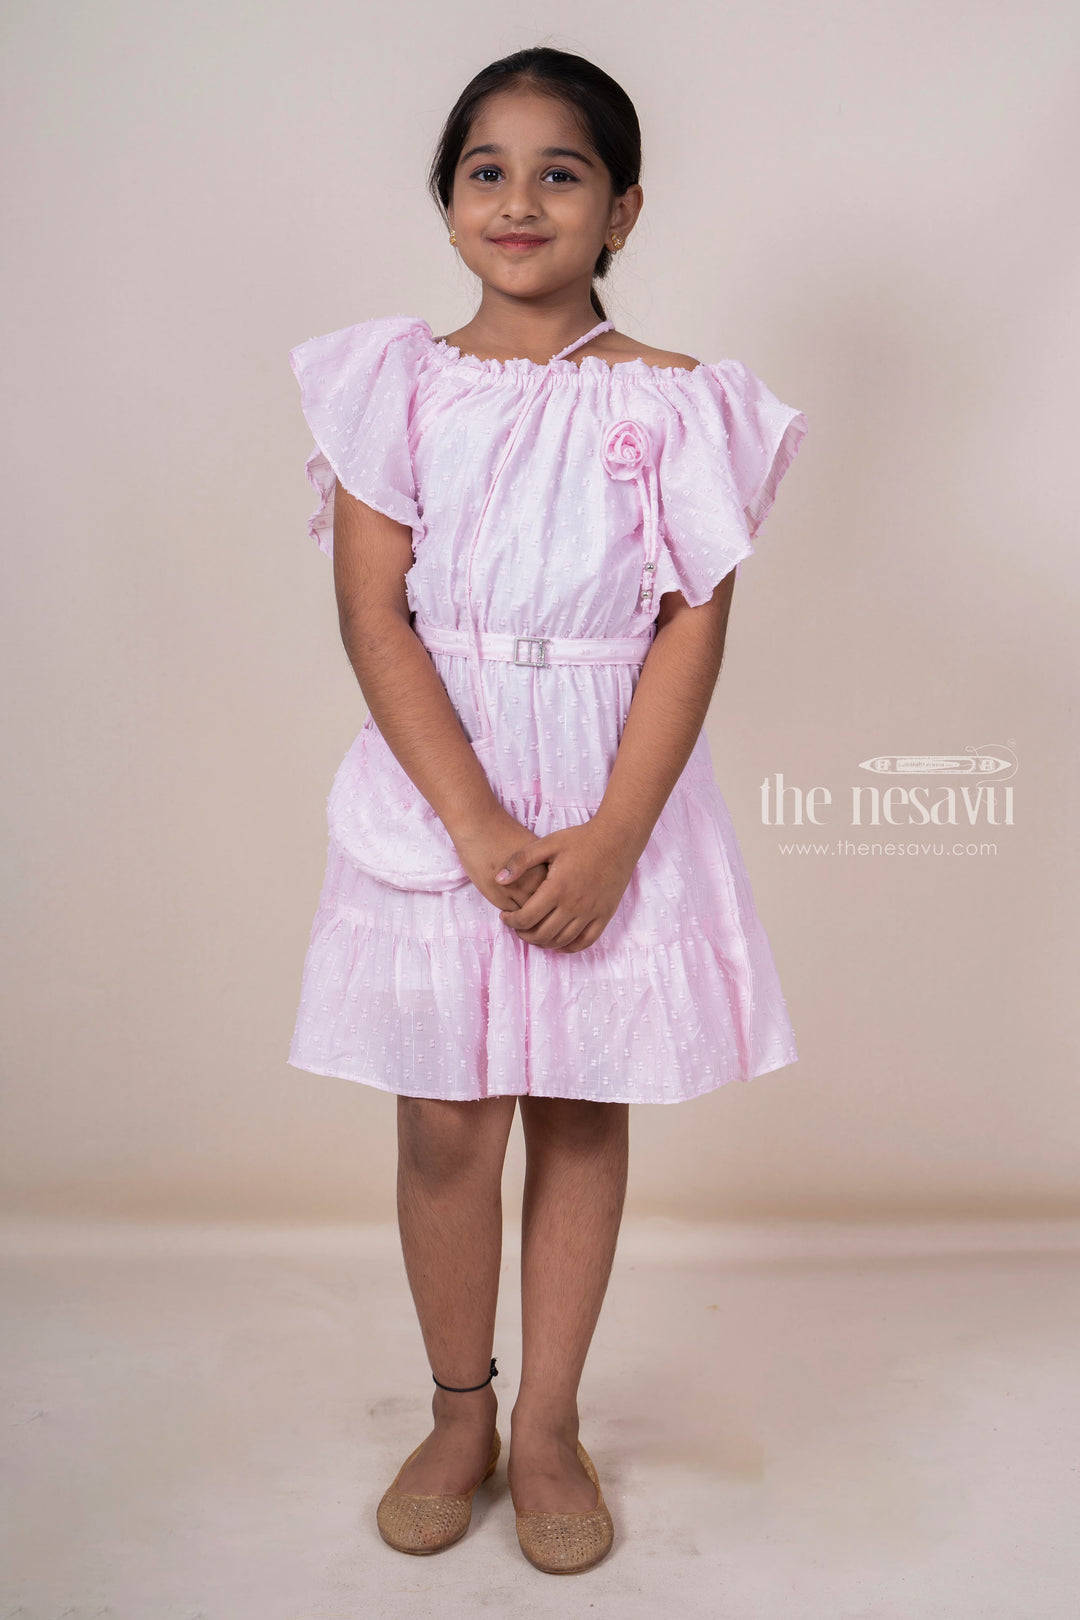 The Nesavu Frocks & Dresses Pink Off-Shoulder Designed Soft Cotton Frock For Baby Girls With Matching Bag psr silks Nesavu